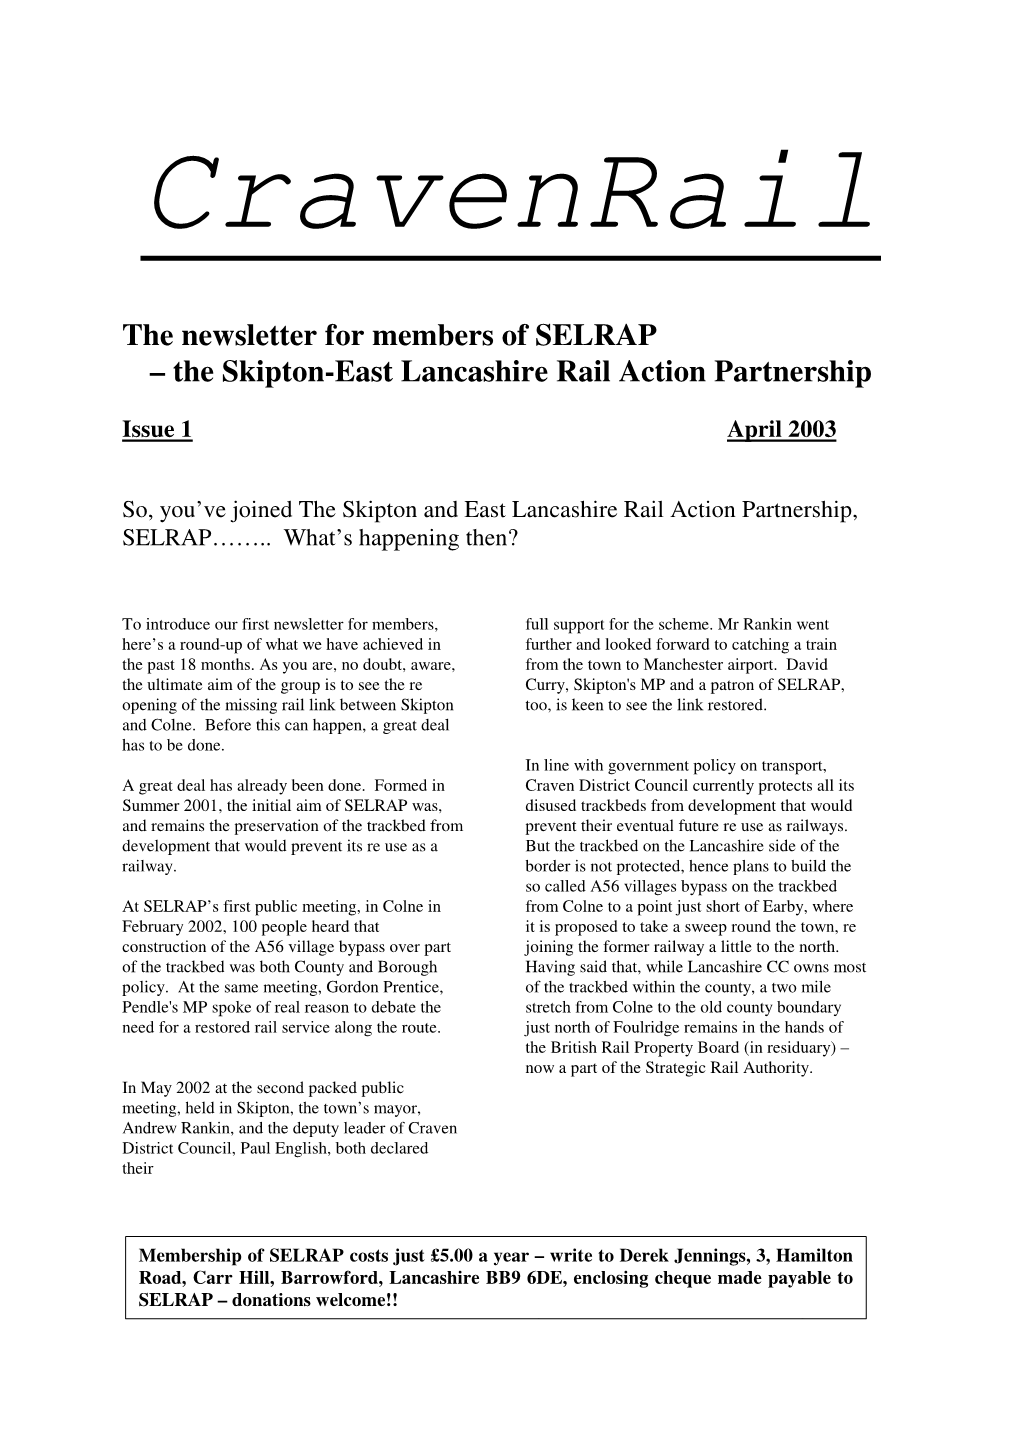 The Skipton-East Lancashire Rail Action Partnership